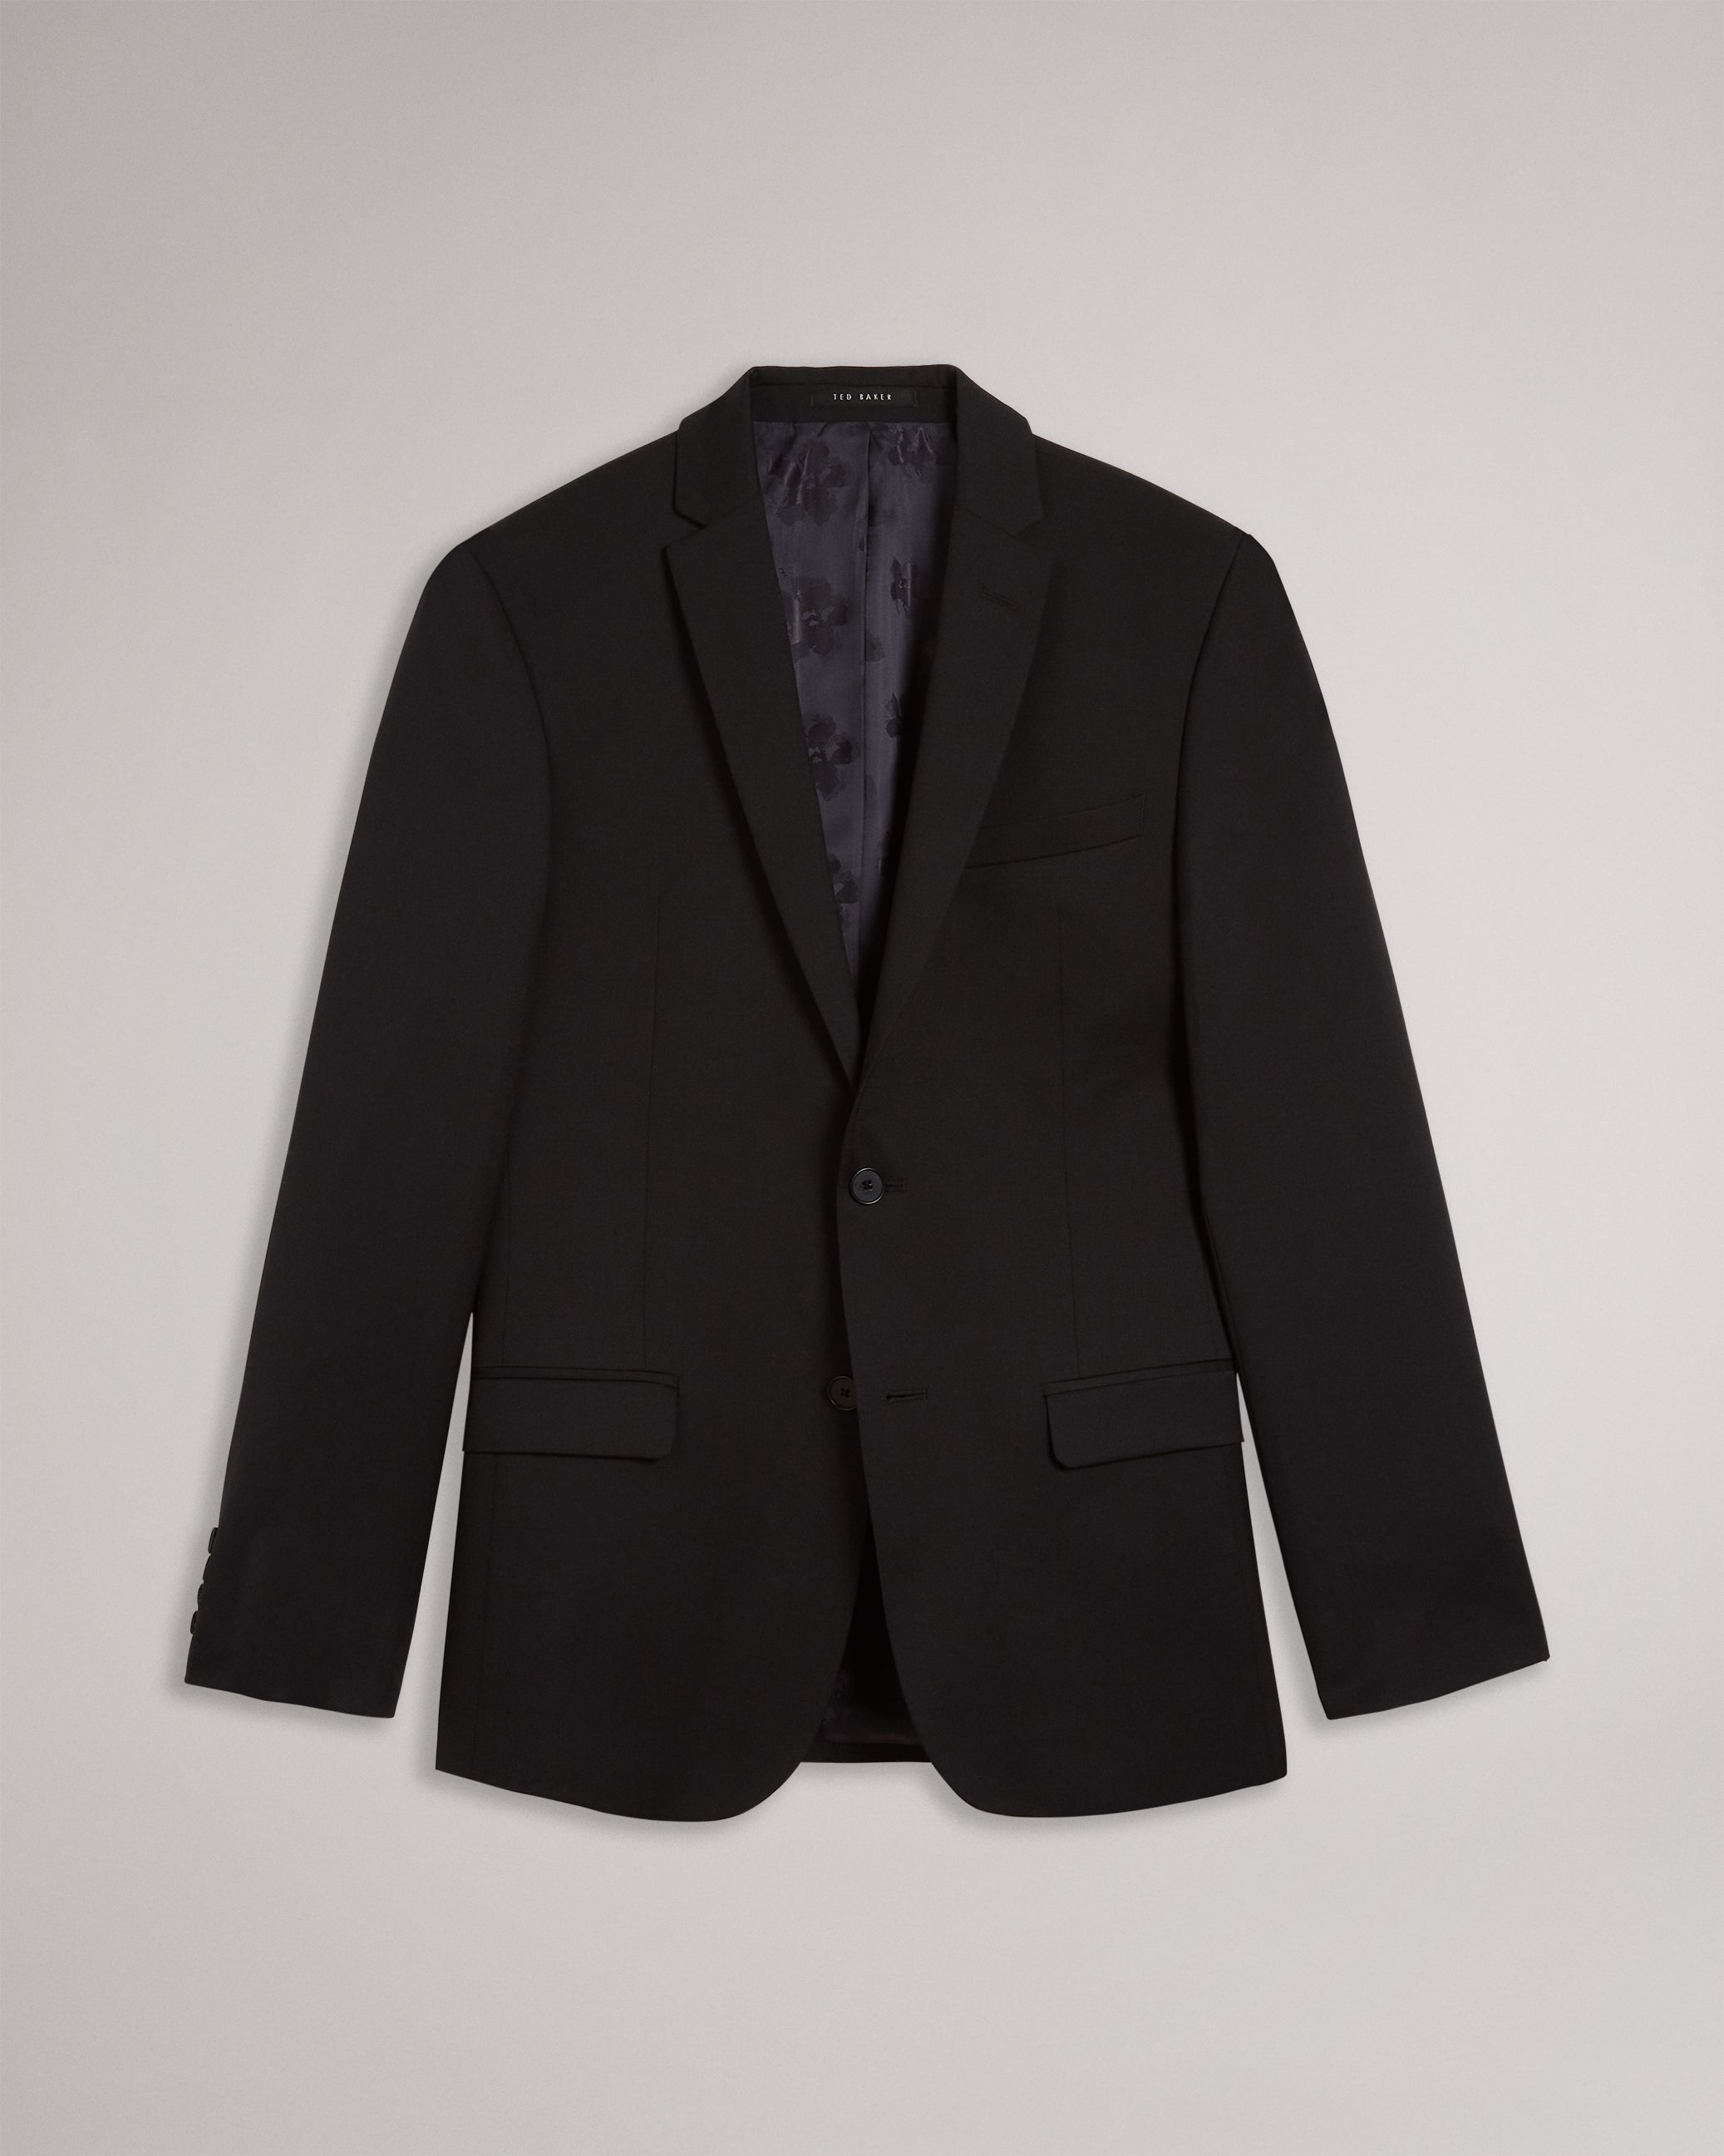 Dundejs Slim Fit Black Twill Suit Jacket Black